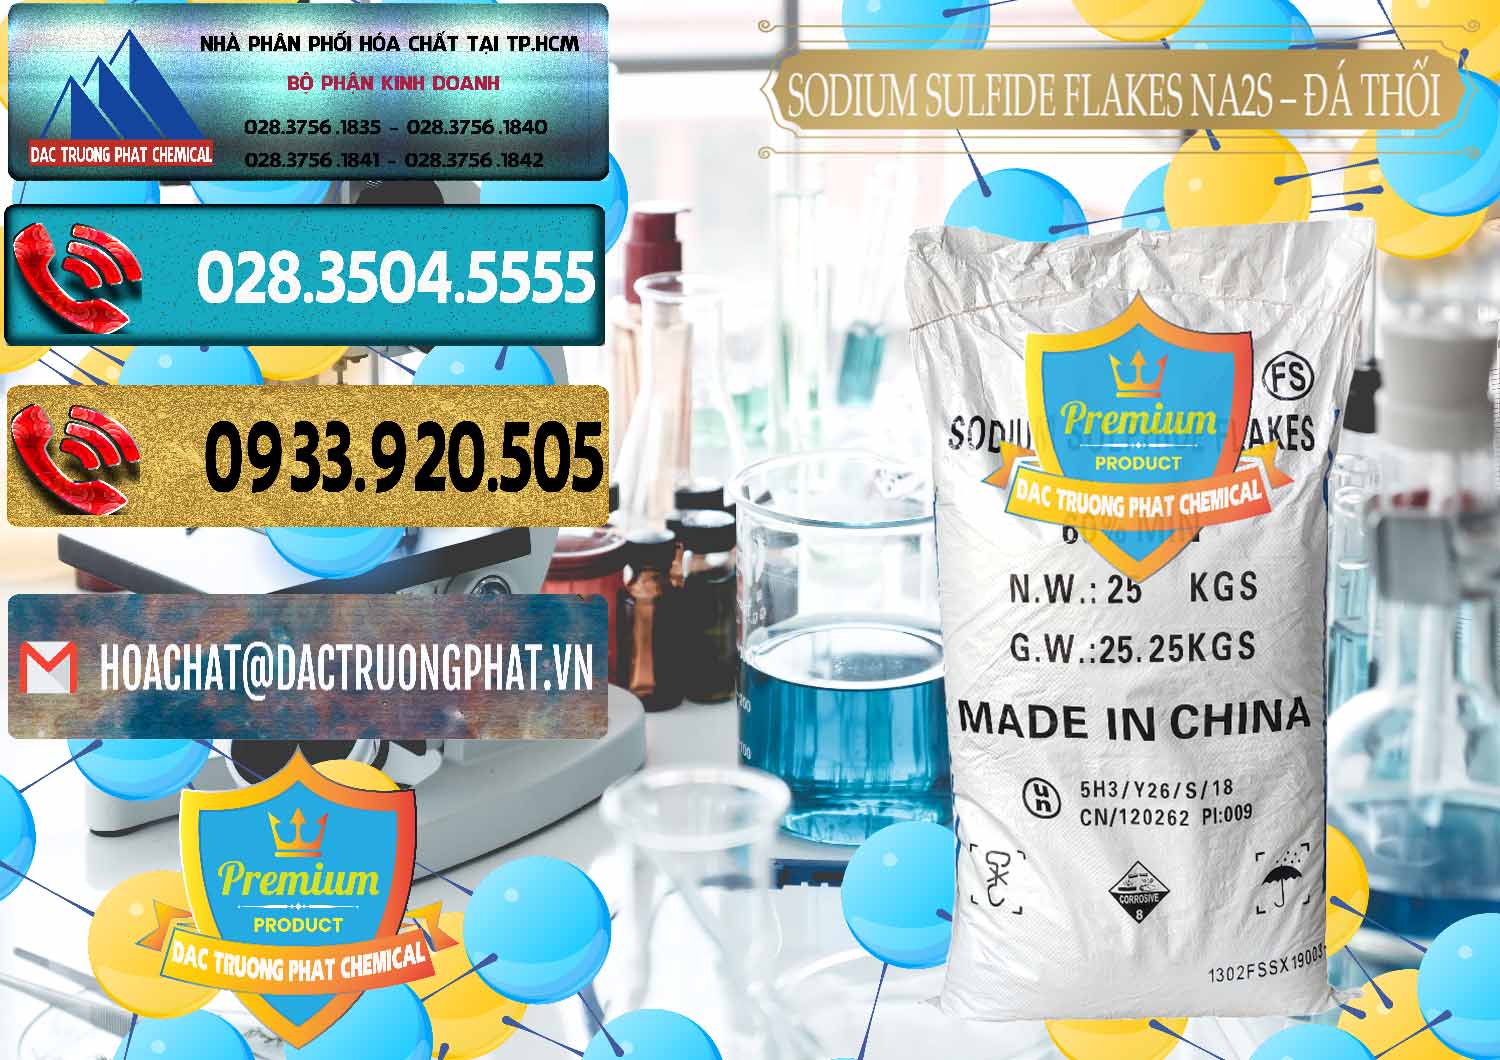 Công ty chuyên cung cấp và bán Sodium Sulfide Flakes NA2S – Đá Thối Đỏ Trung Quốc China - 0150 - Đơn vị phân phối & bán hóa chất tại TP.HCM - hoachatdetnhuom.com